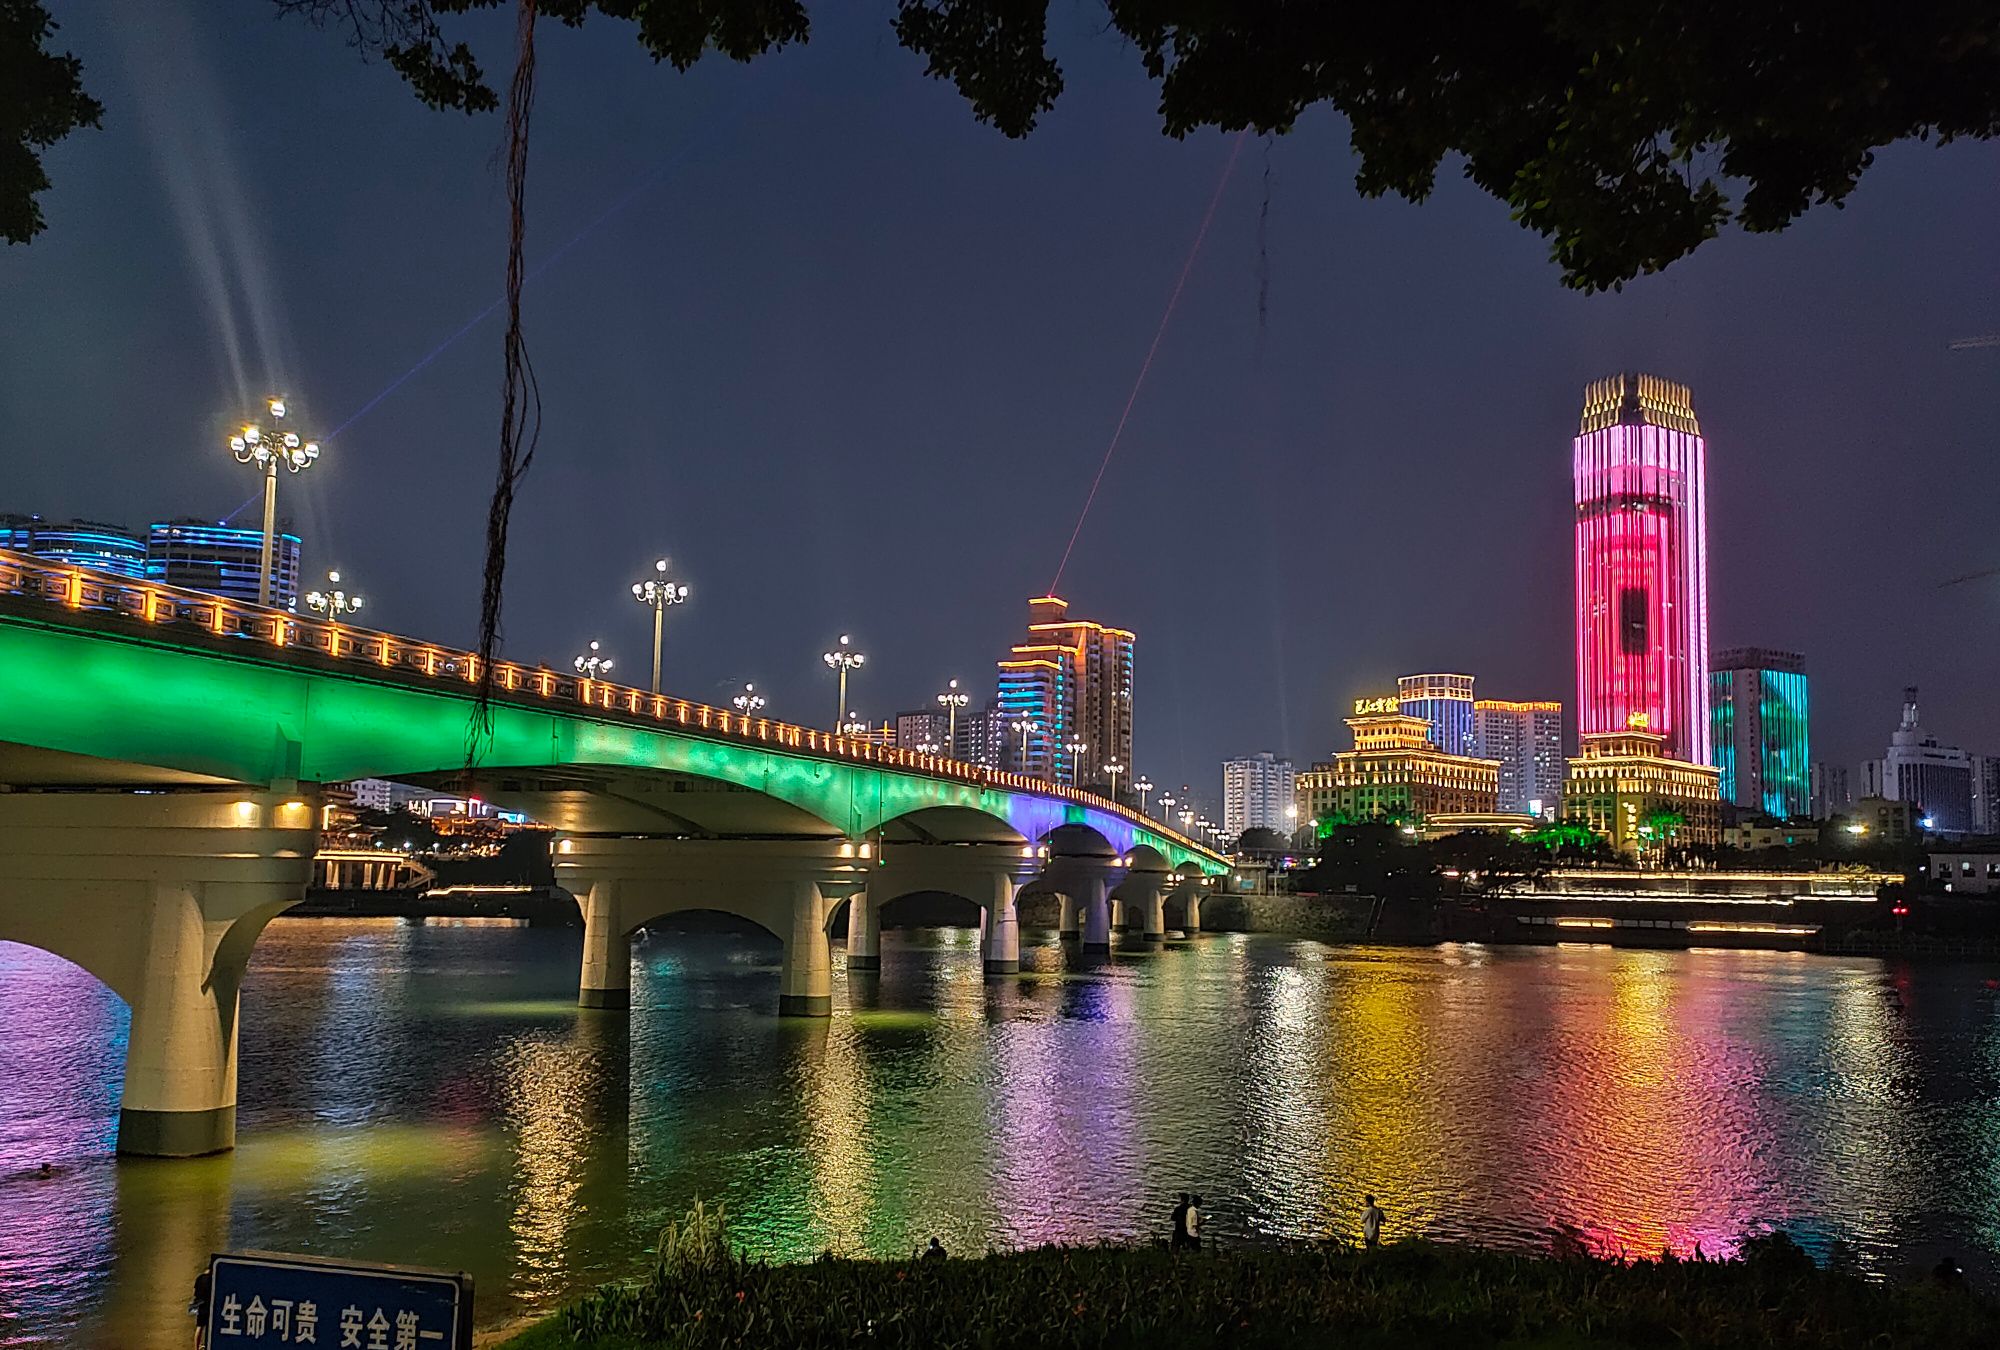 中兴大桥夜景照明工程——2021神灯奖申报工程-阿拉丁照明网